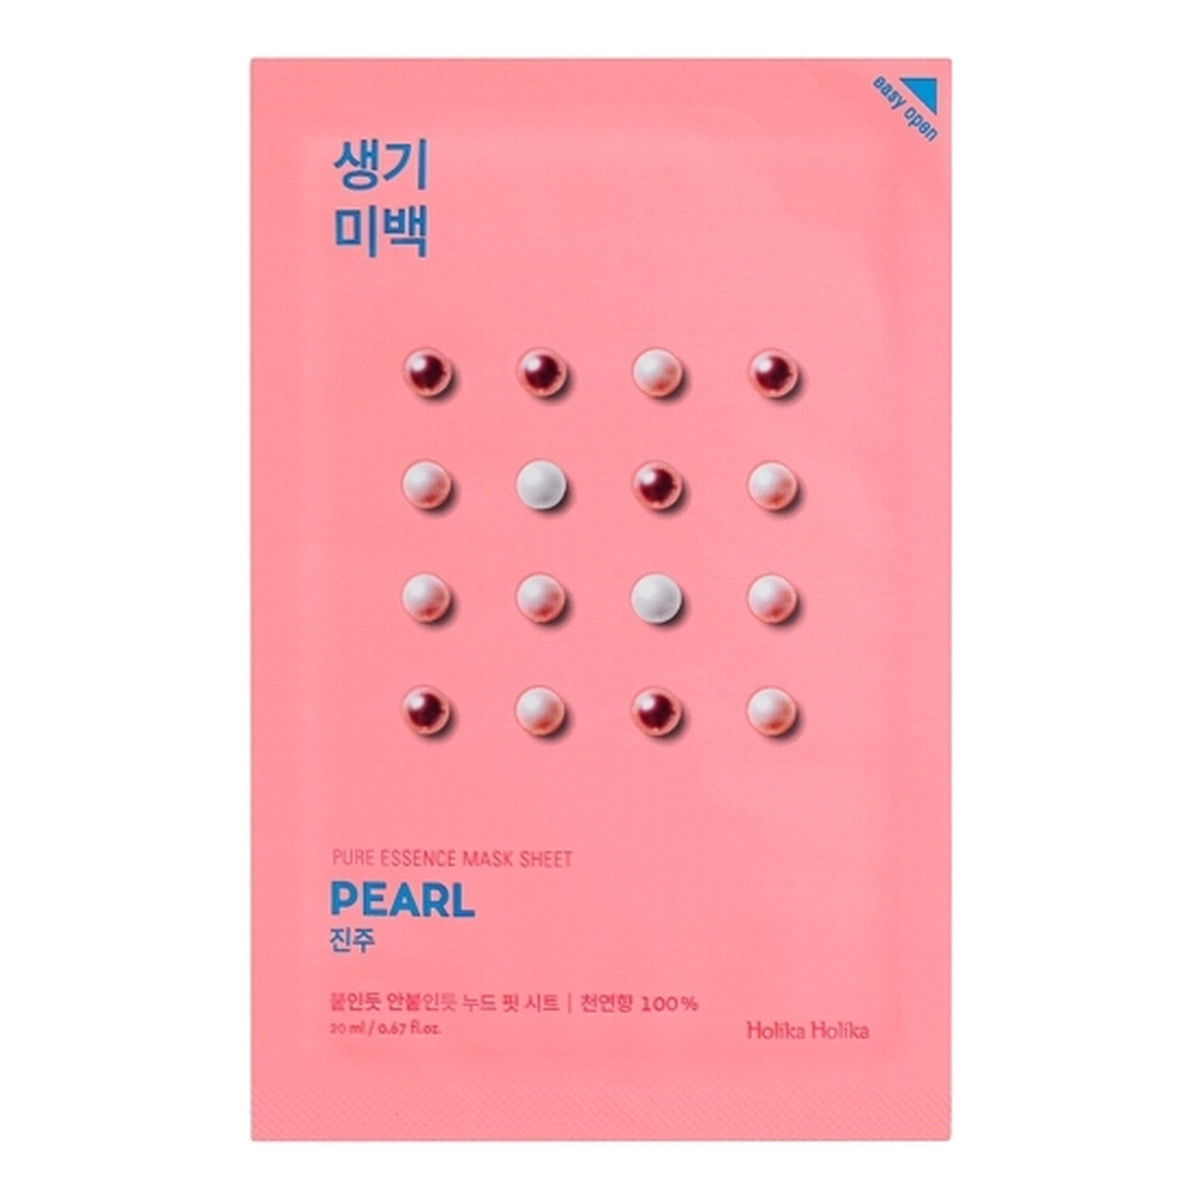 Holika Holika Pure Essence Mask Sheet Pearl maseczka z ekstraktem z pereł przeciwzmarszczkowa 1 sztuka 20ml